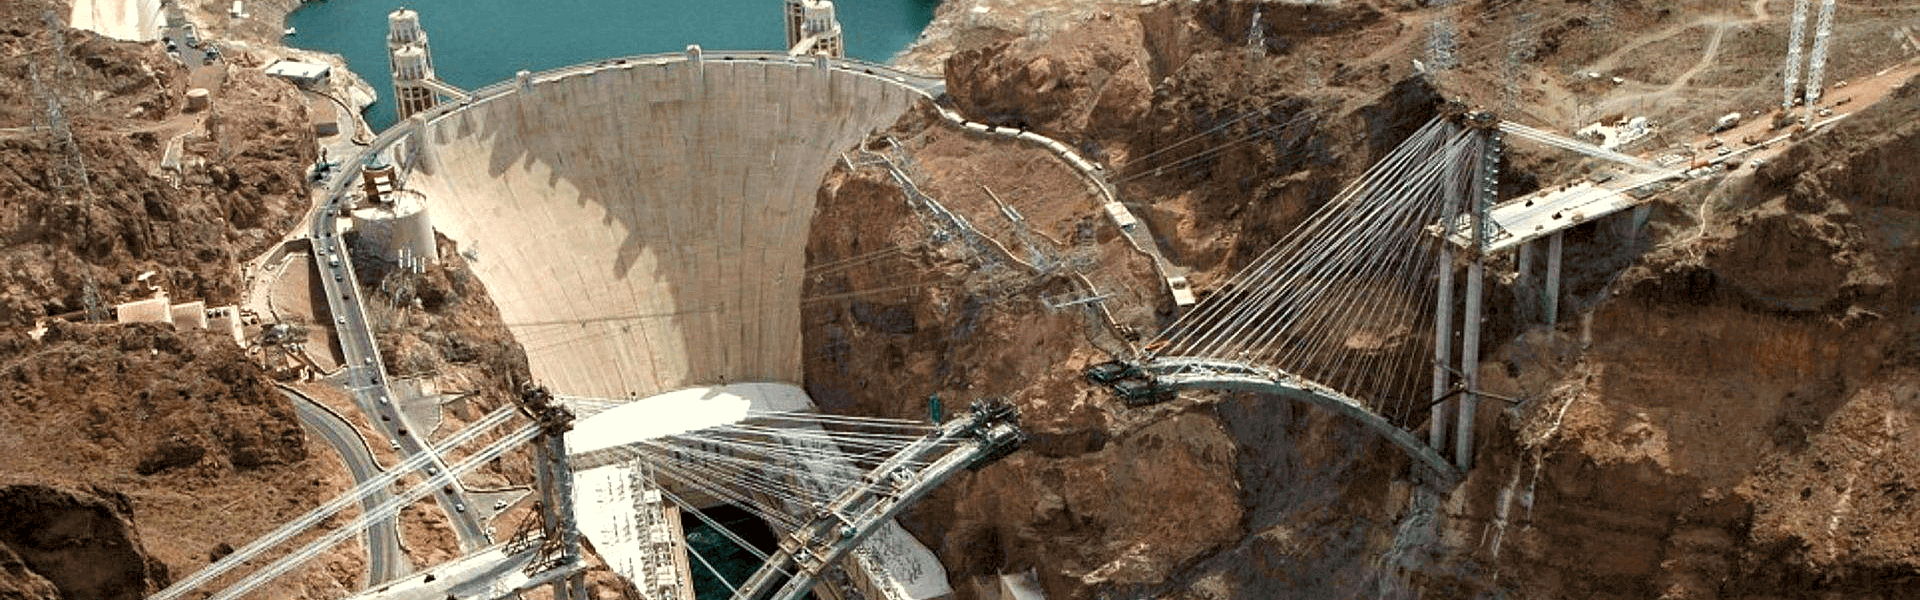 Surescape Hoover Dam Project